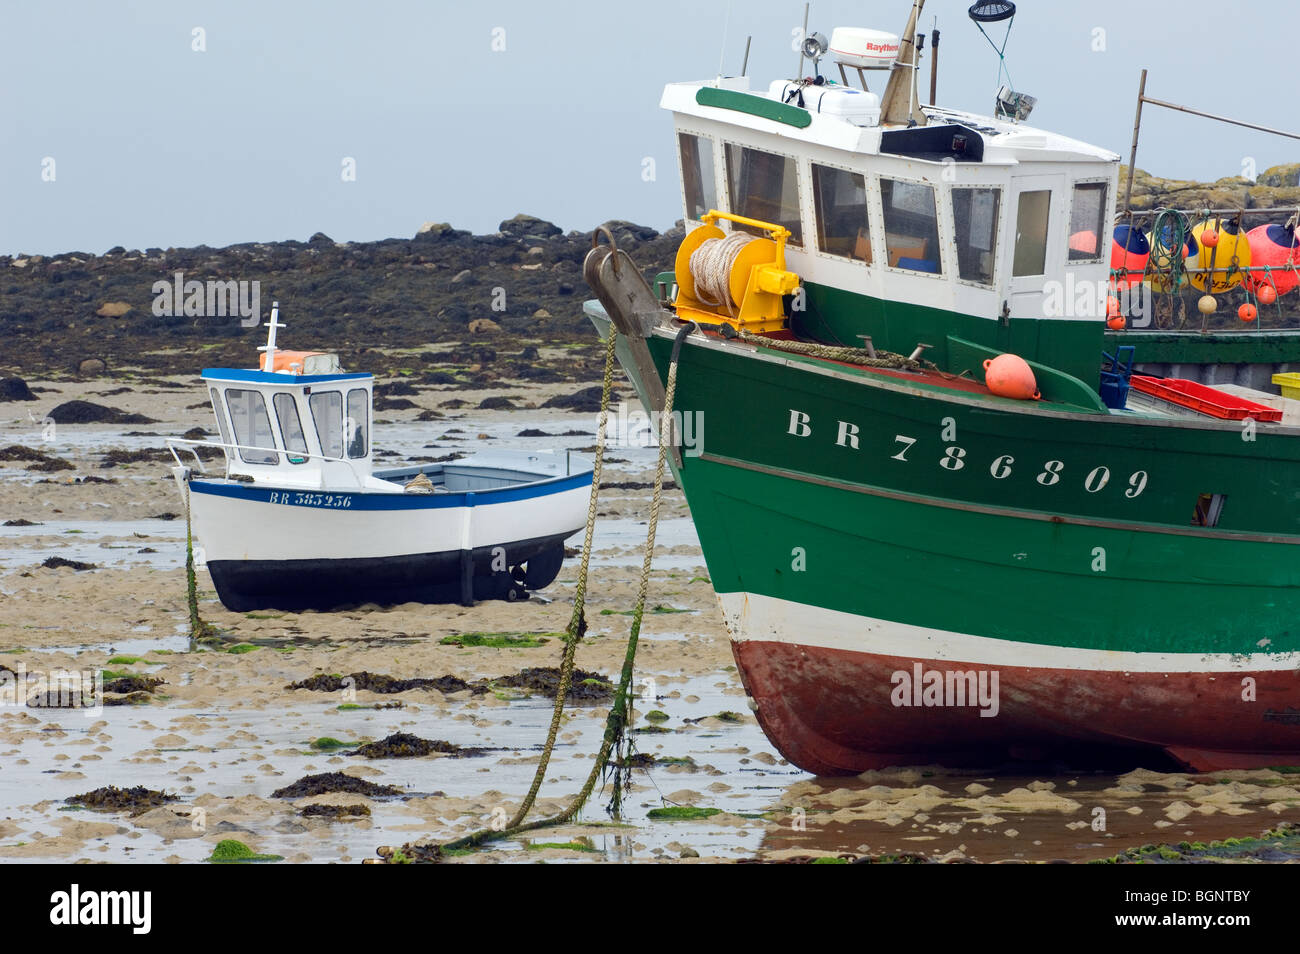 Deux bateaux de pêche sur la plage à marée basse, Bretagne, France Banque D'Images